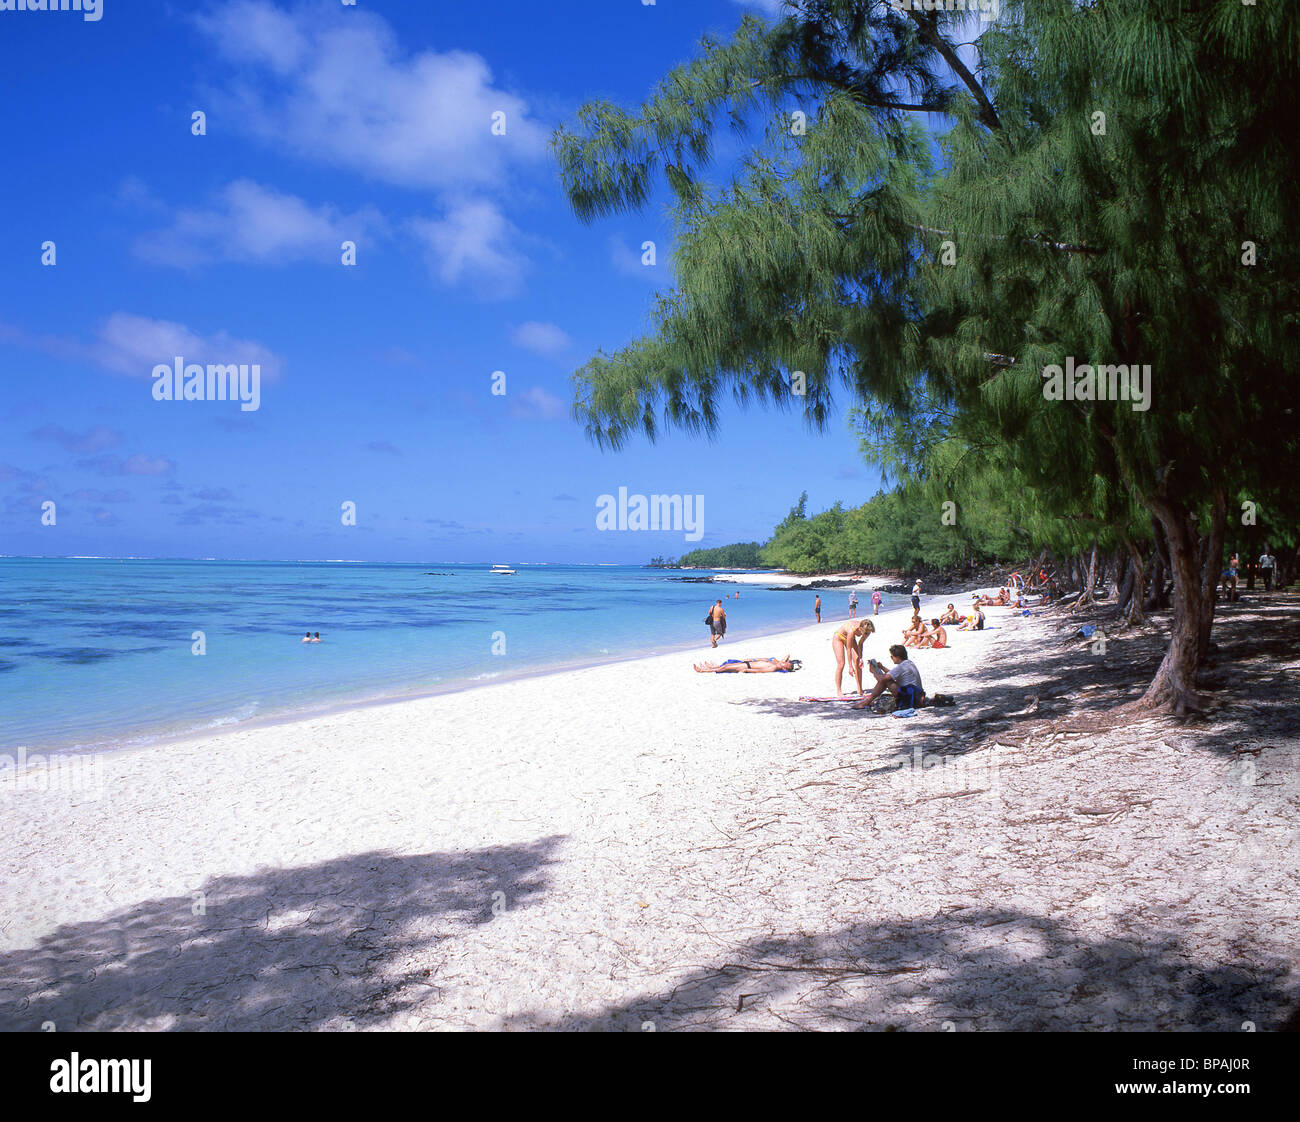 Beach view, Île aux Cerfs, Flacq District, Republic of Mauritius Stock Photo